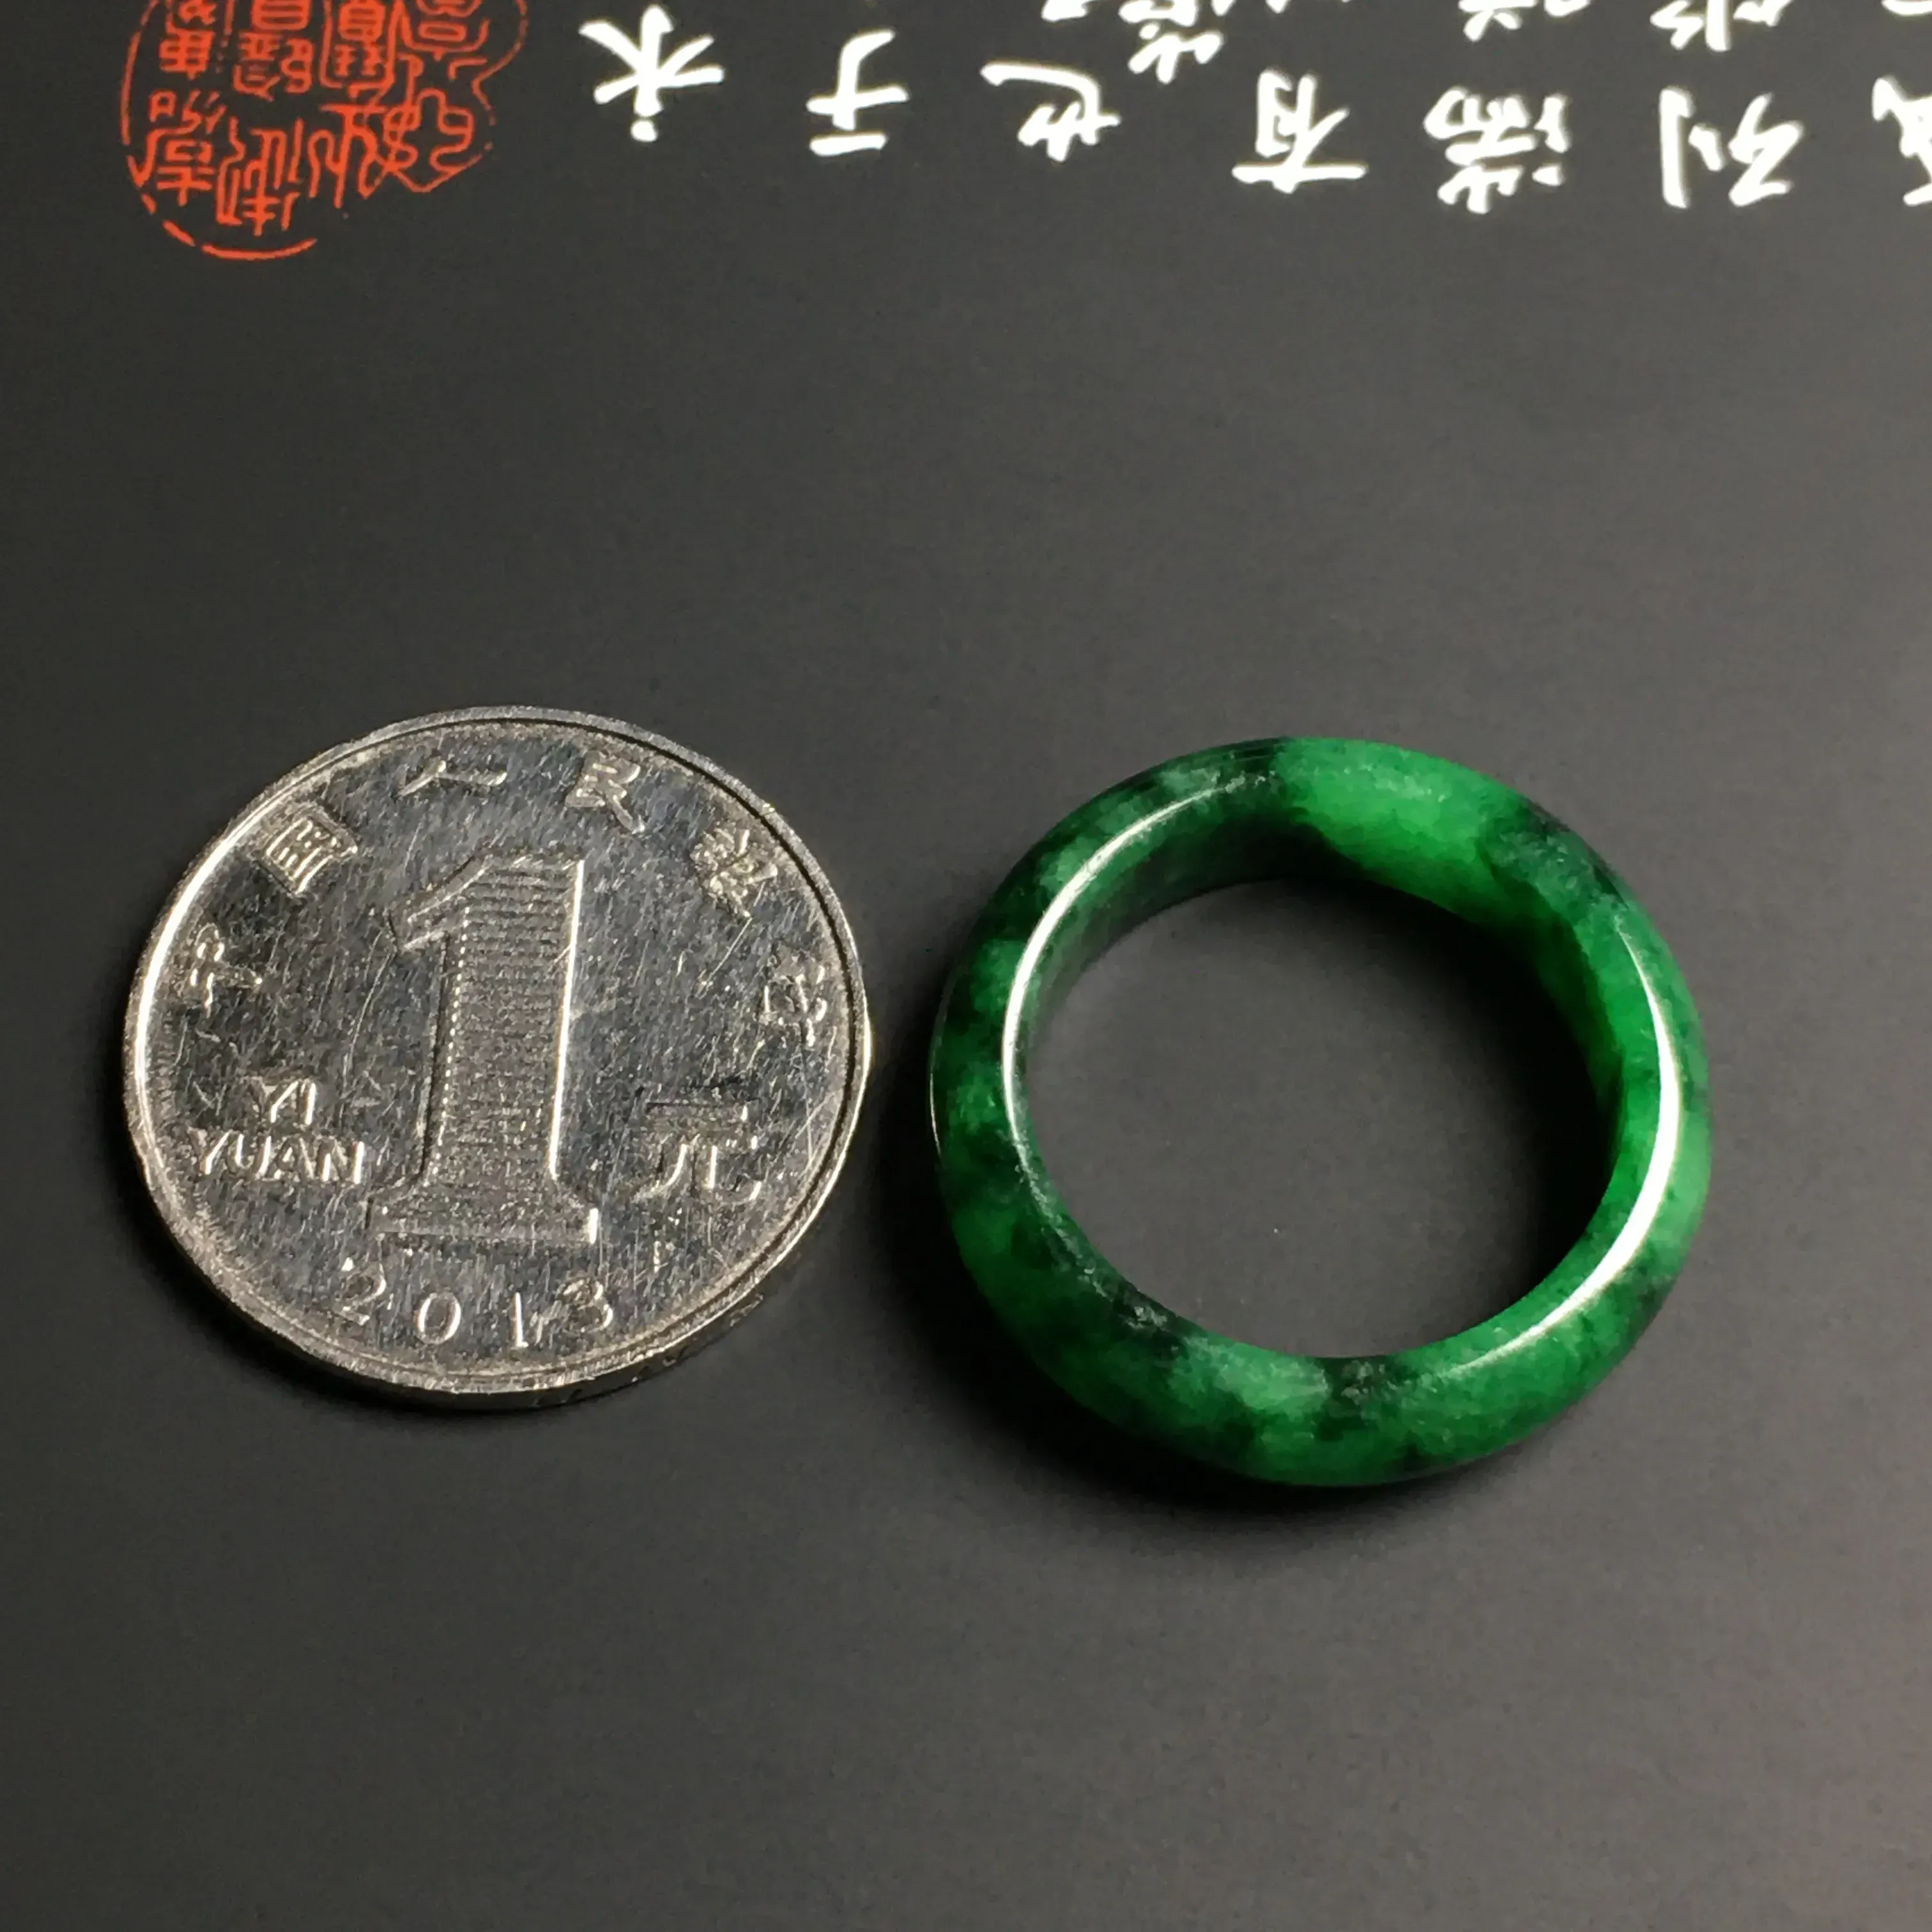 糯化种阳绿指环 内直径19.1毫米 外径25.6宽6.8厚3毫米 翠色艳丽 质地细腻 款式时尚